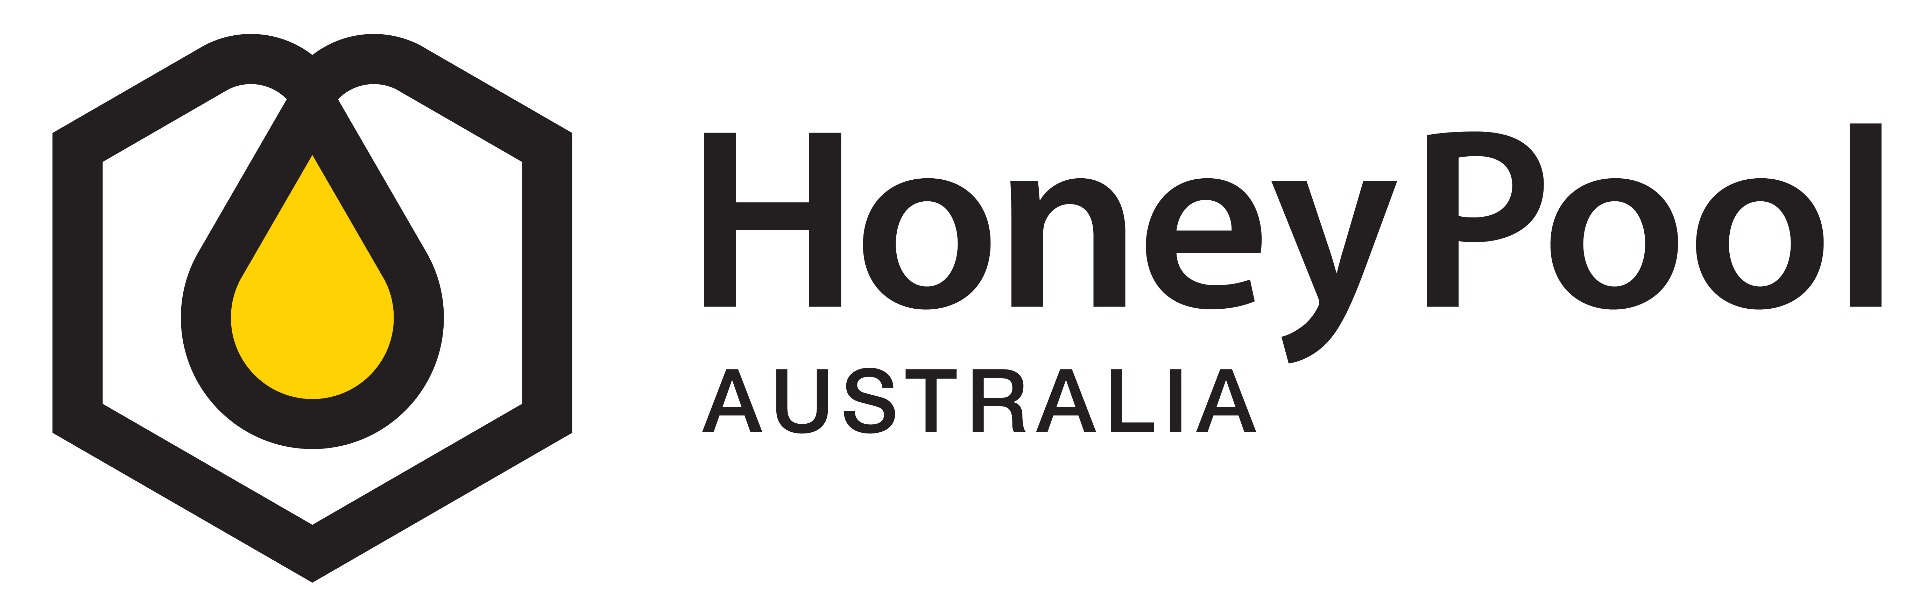 Honey Pool Australia